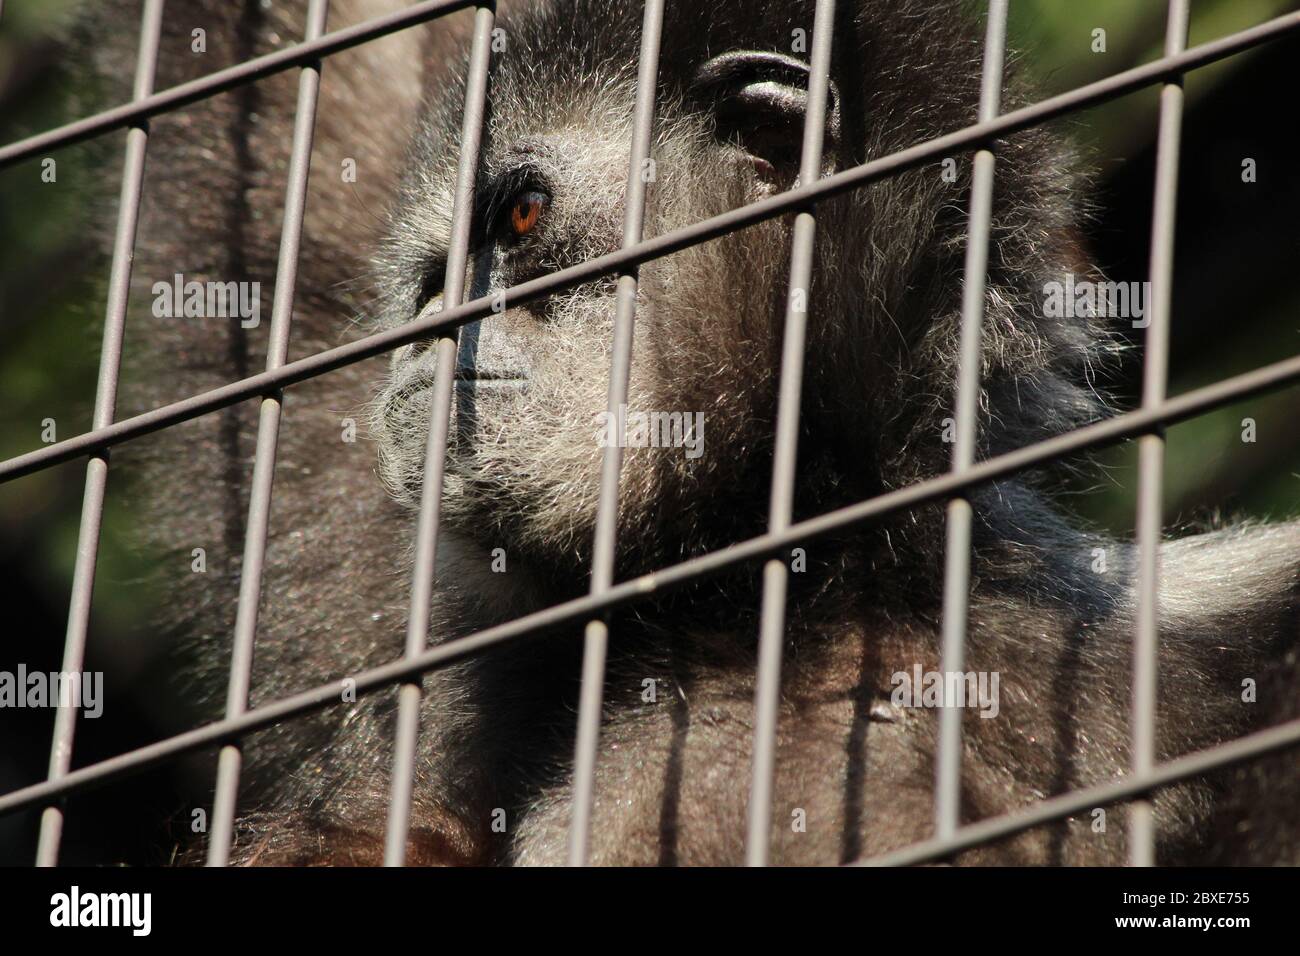 Gibon Monkey behind bars Stock Photo